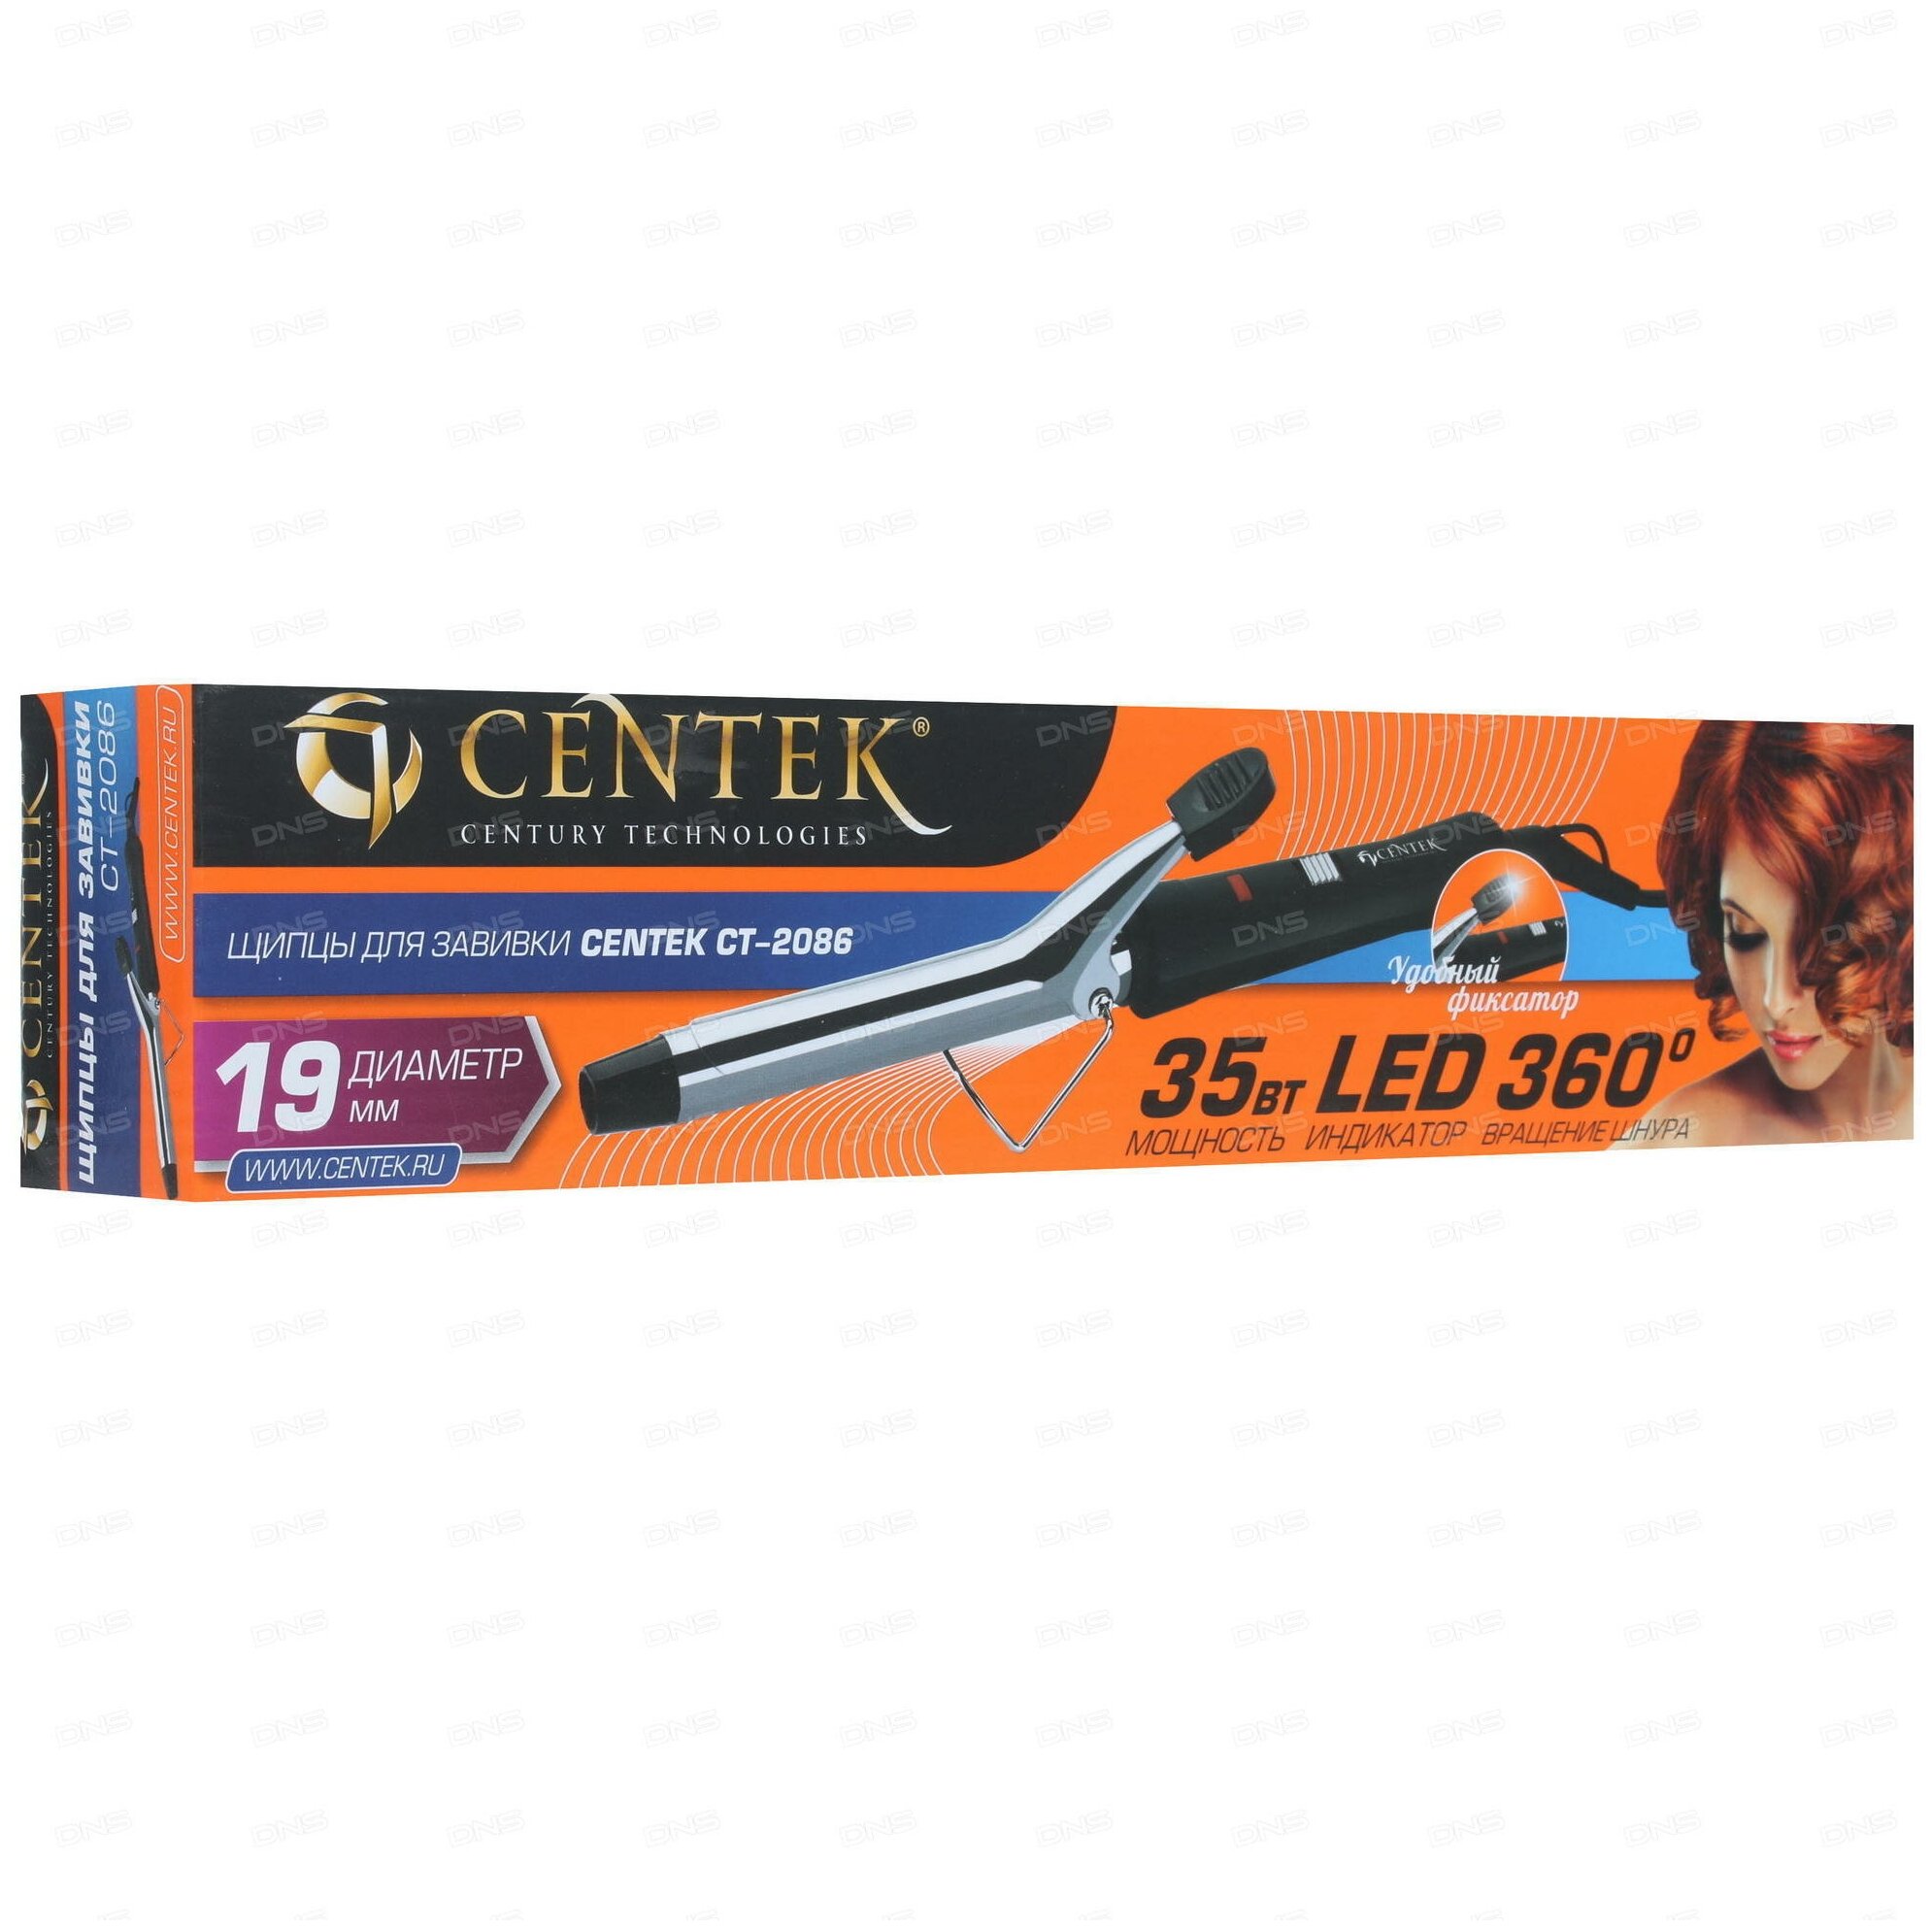 Прибор для укладки волос (CENTEK CT-2086)